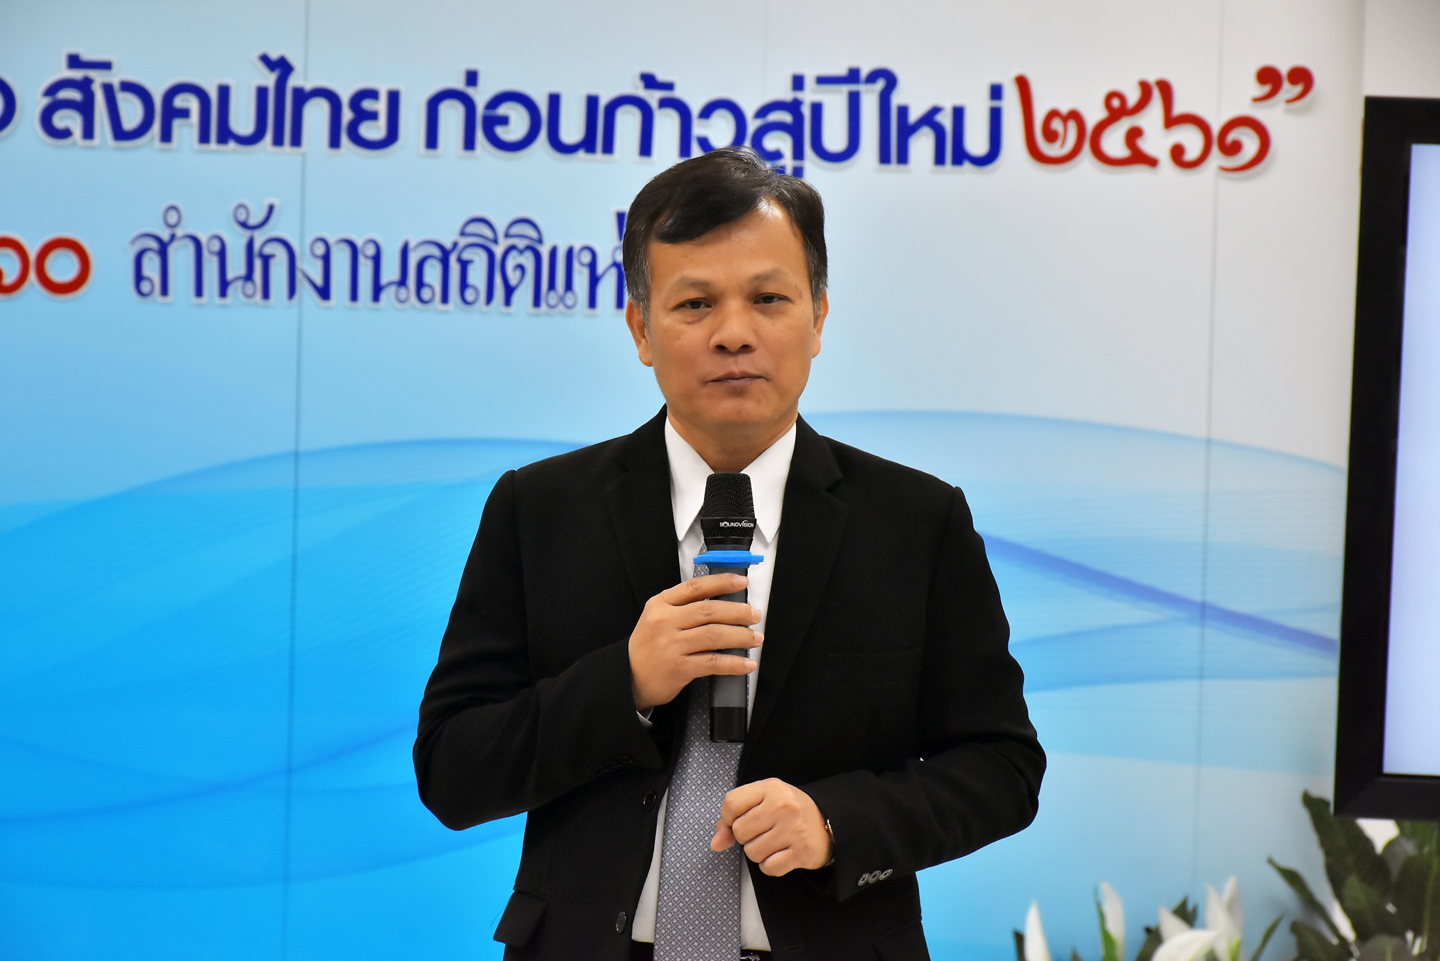 แถลงข่าว “ทบทวนเศรษฐกิจ สังคมไทย ก่อนก่าวสู่ปีใหม่ 2561”